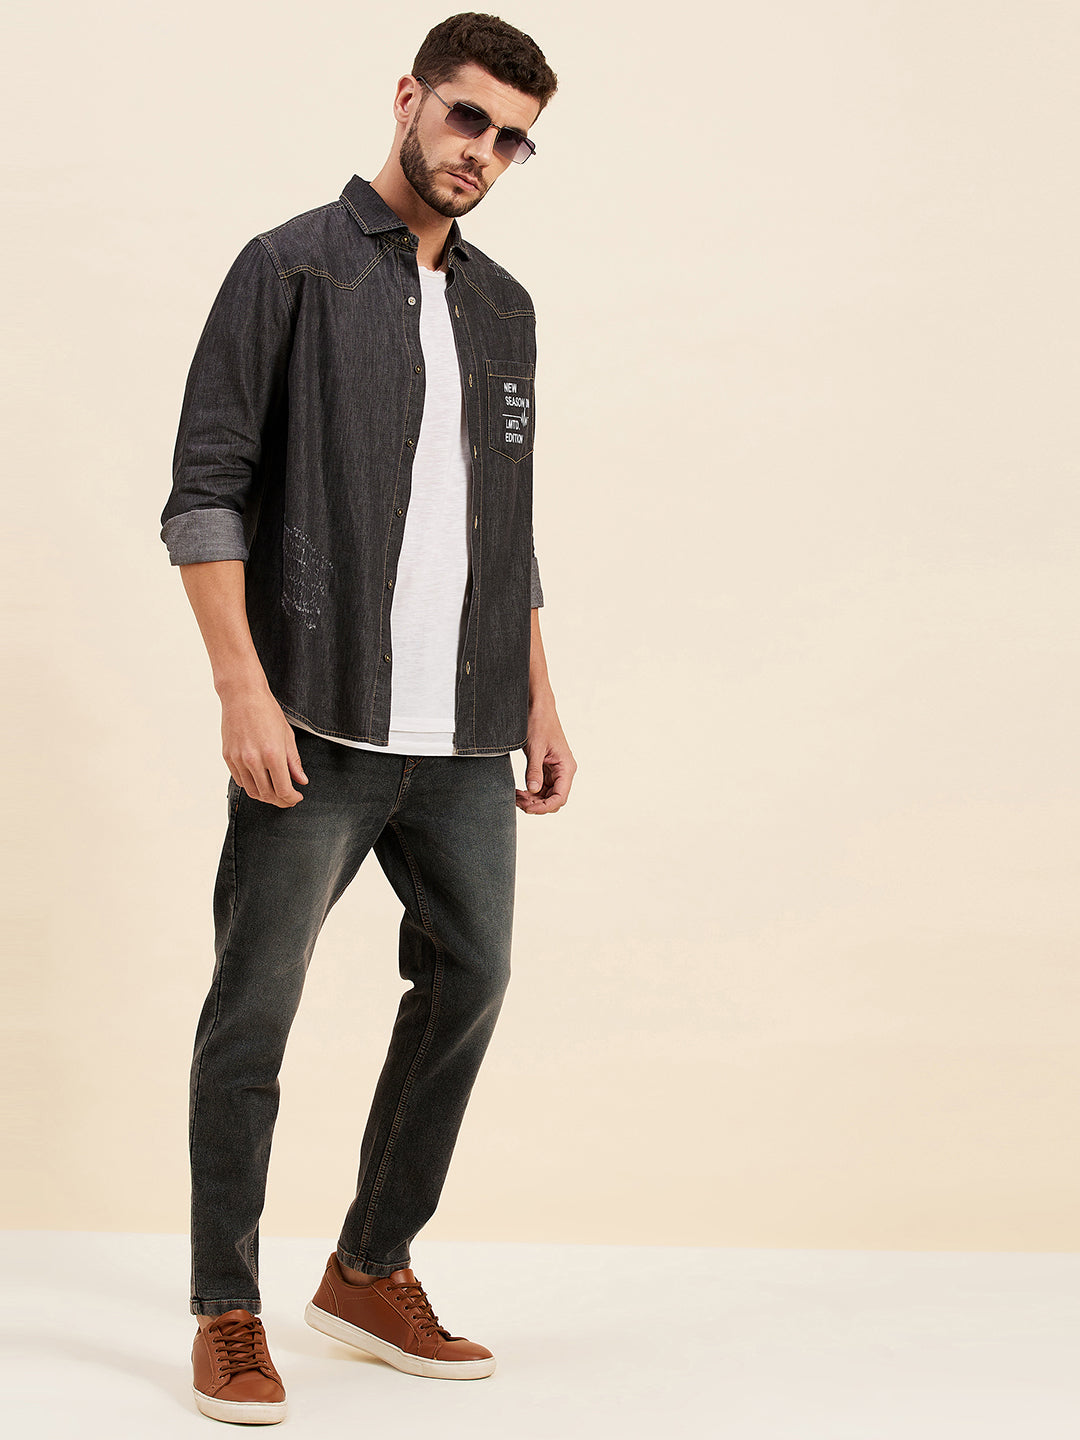 Men's Charcoal Grey Slim Fit Jeans - LYUSH-MASCLN